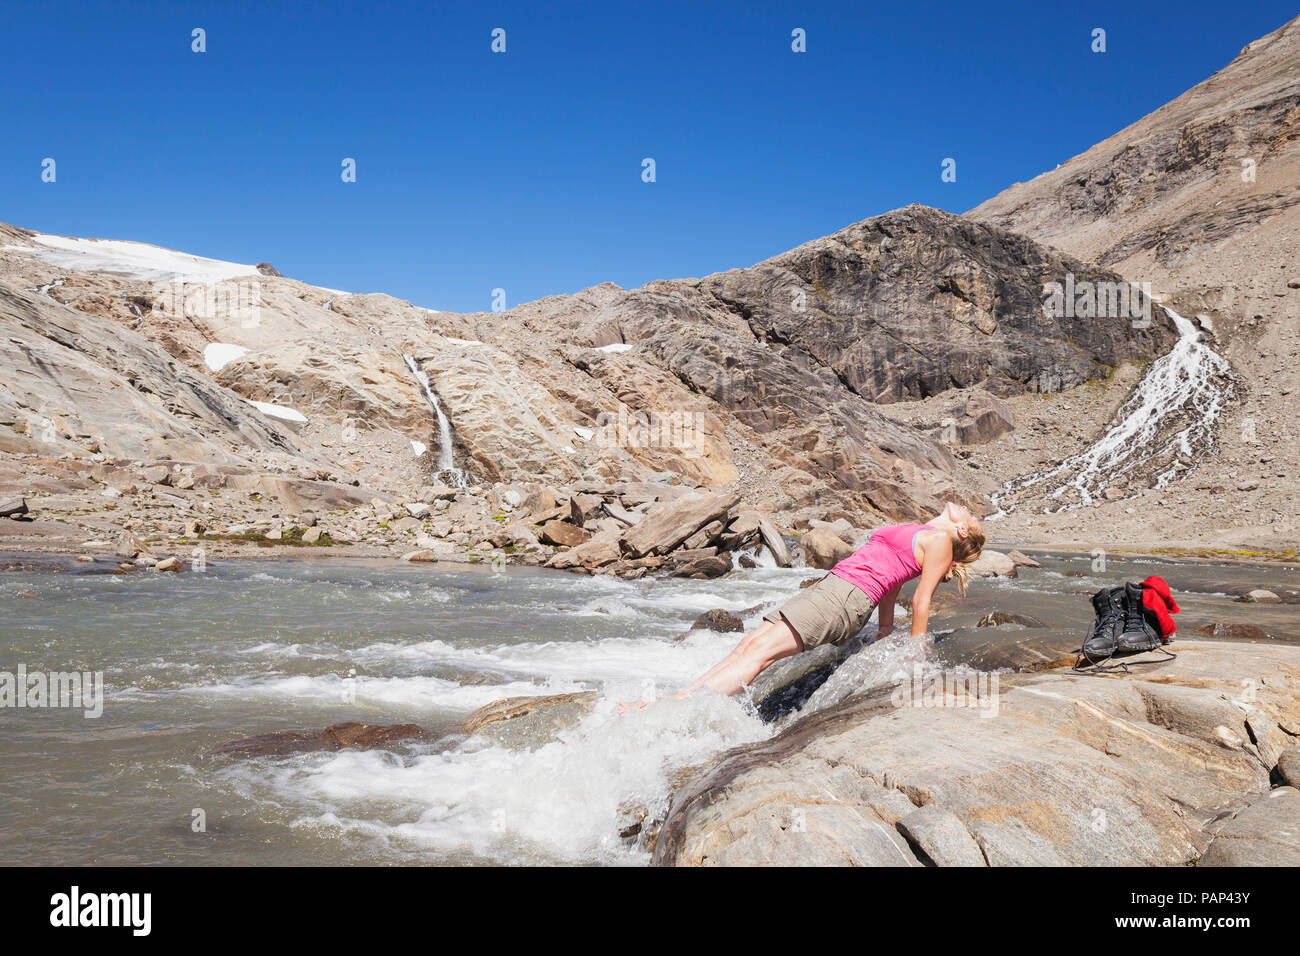 L'Austria, in Carinzia Grossglockner, Pasterze, donna godendo di pausa rinfrescante da escursionismo, Alti Tauri Parco Nazionale Foto Stock